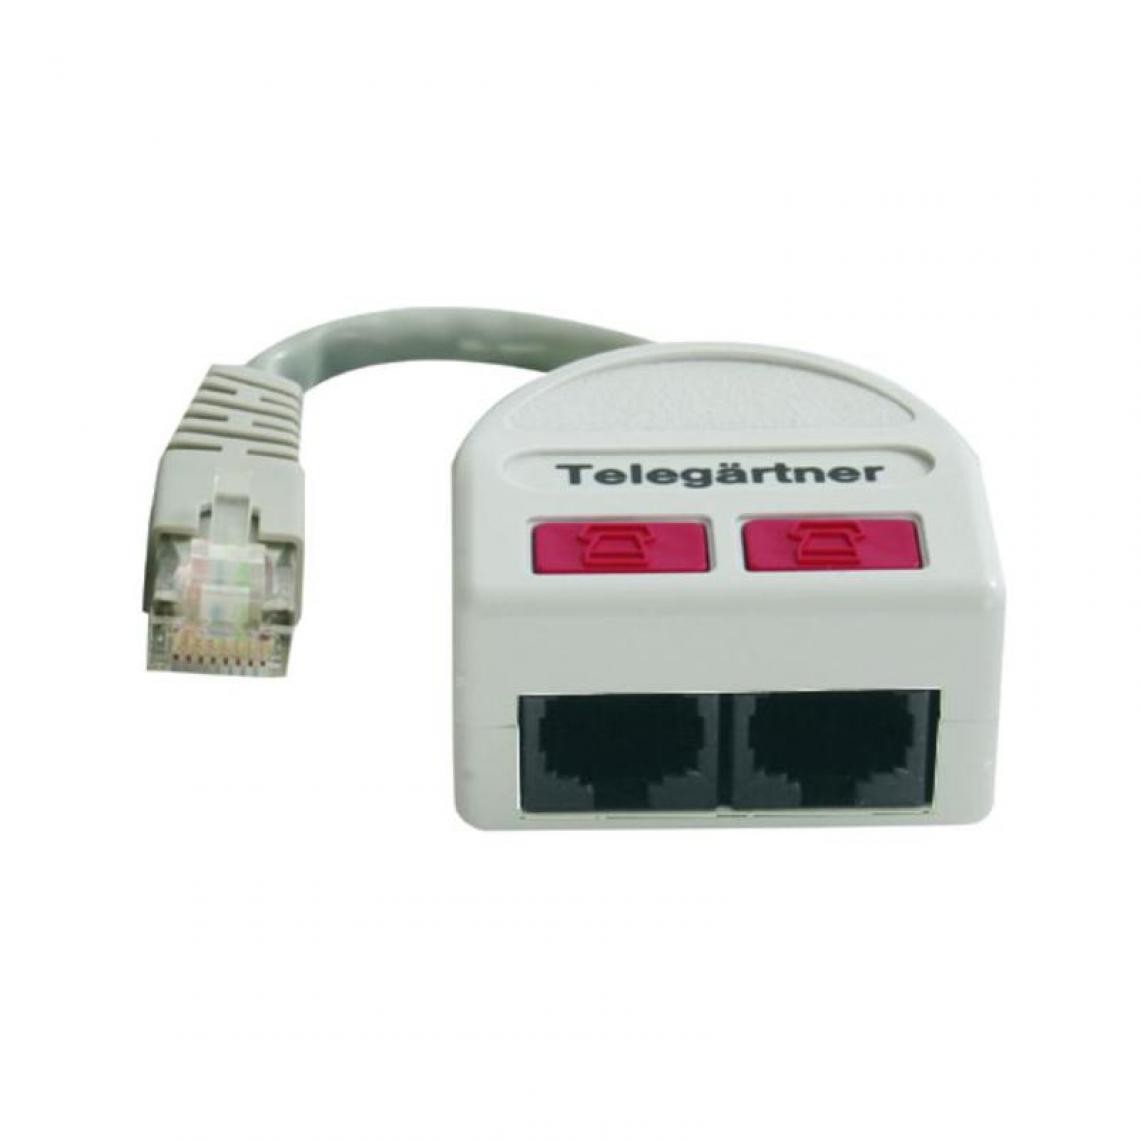 Telegartner - Telegärtner RNIS adapter-T pour les côtés des boîtes () - Accessoires Téléphone Fixe